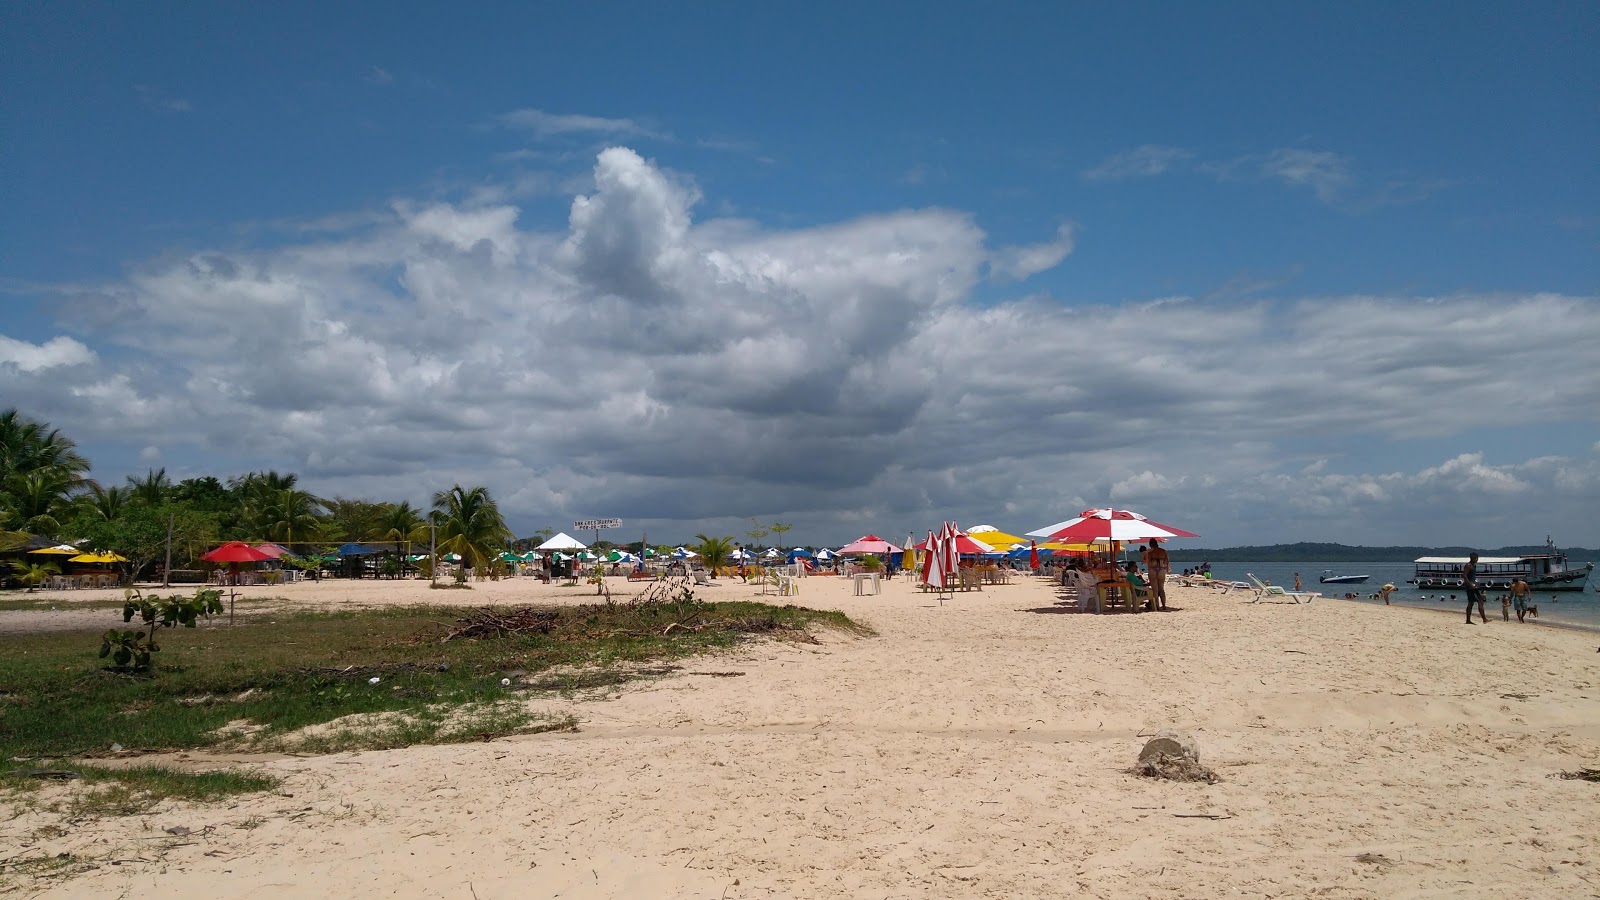 Fotografija Praia linda in naselje